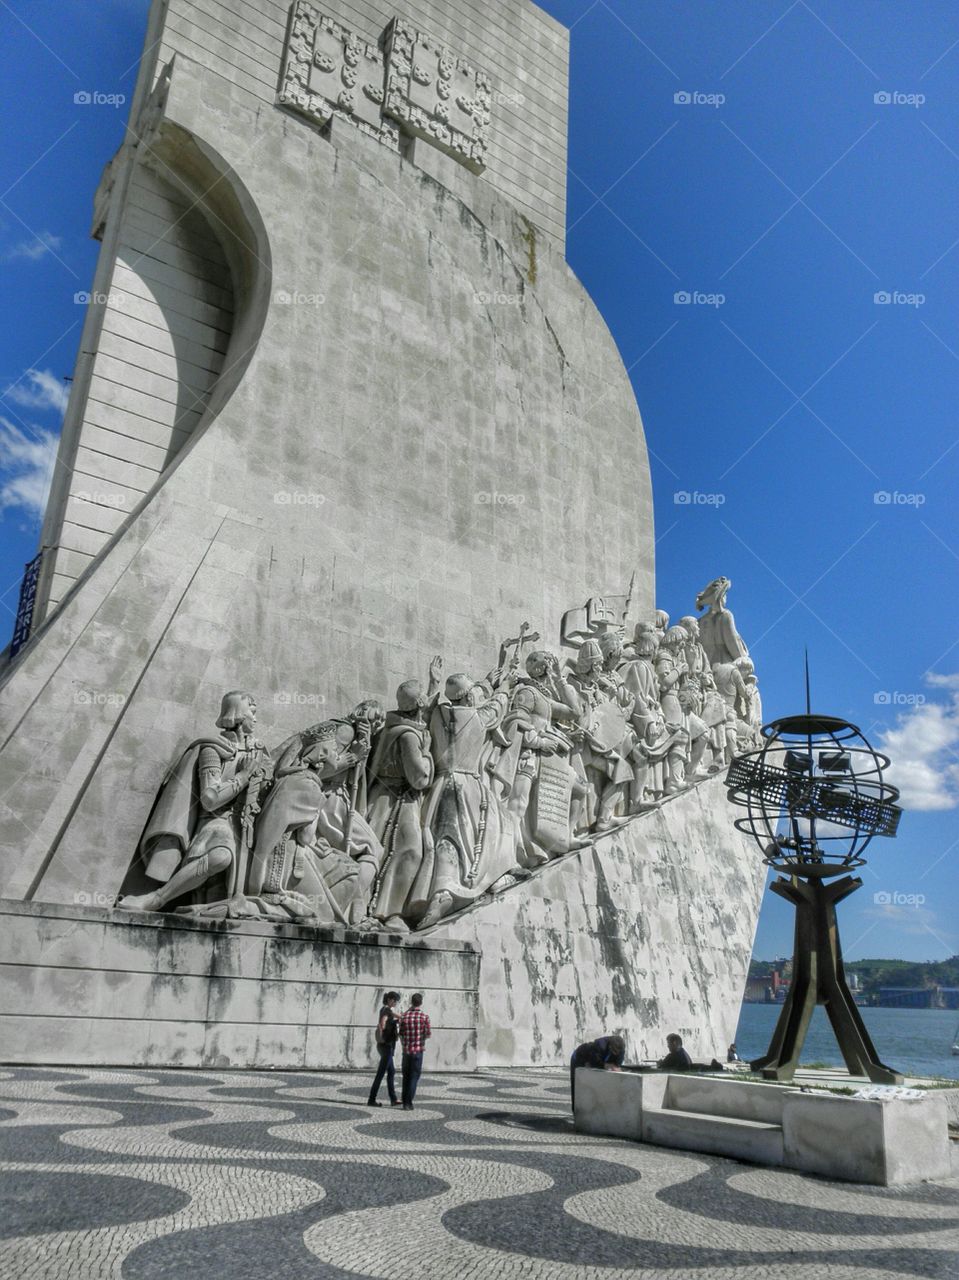 Padrão dos Descubrimentos. Monument to the Discoveries, Lisbon, Portugal